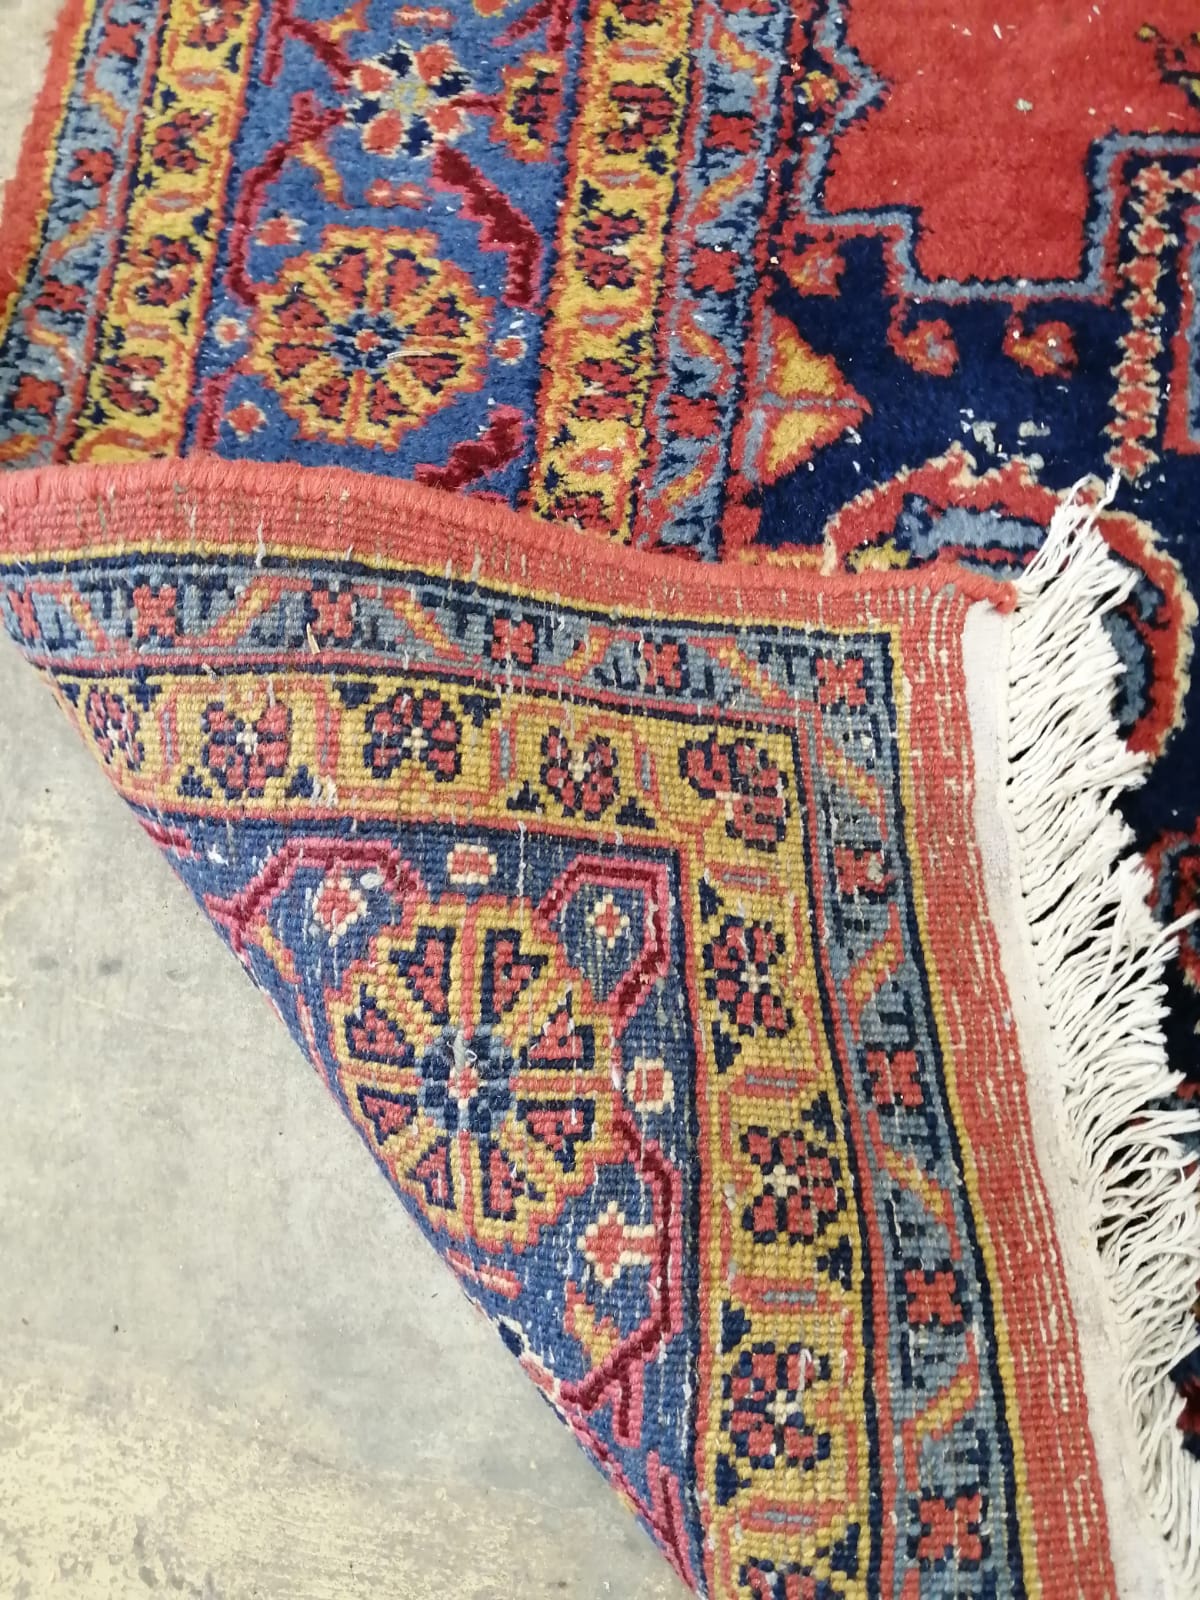 A Turkish red ground carpet, 337cm x 249cm